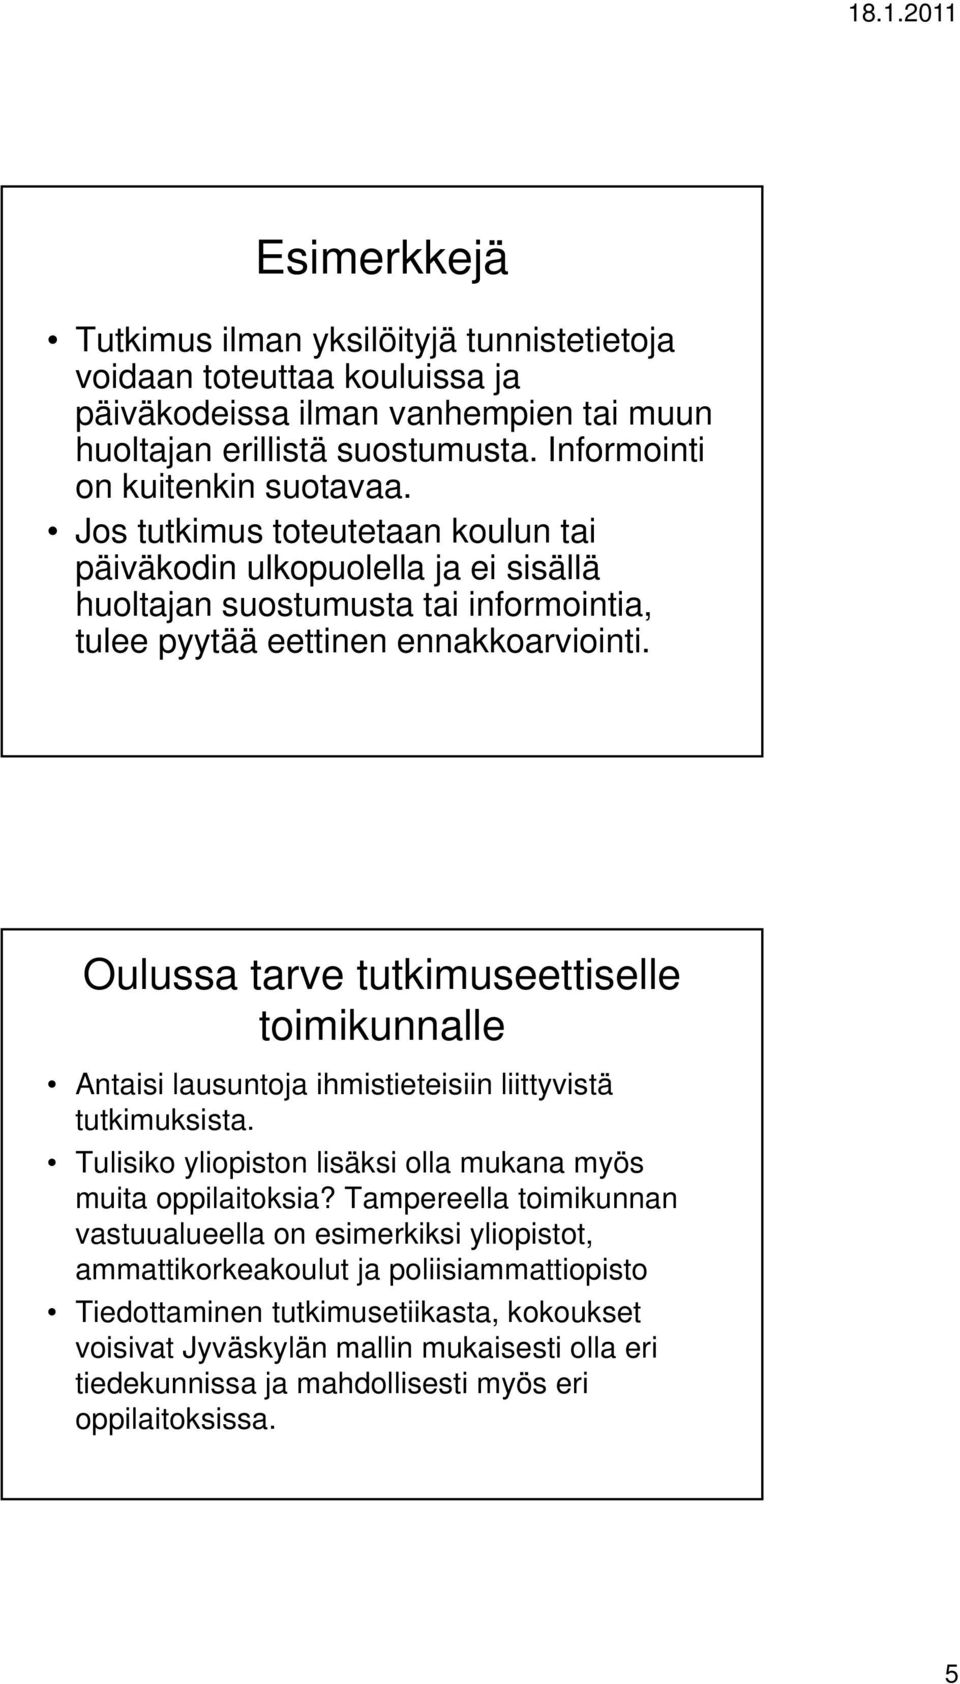 Oulussa tarve tutkimuseettiselle toimikunnalle Antaisi lausuntoja ihmistieteisiin liittyvistä tutkimuksista. Tulisiko yliopiston lisäksi olla mukana myös muita oppilaitoksia?